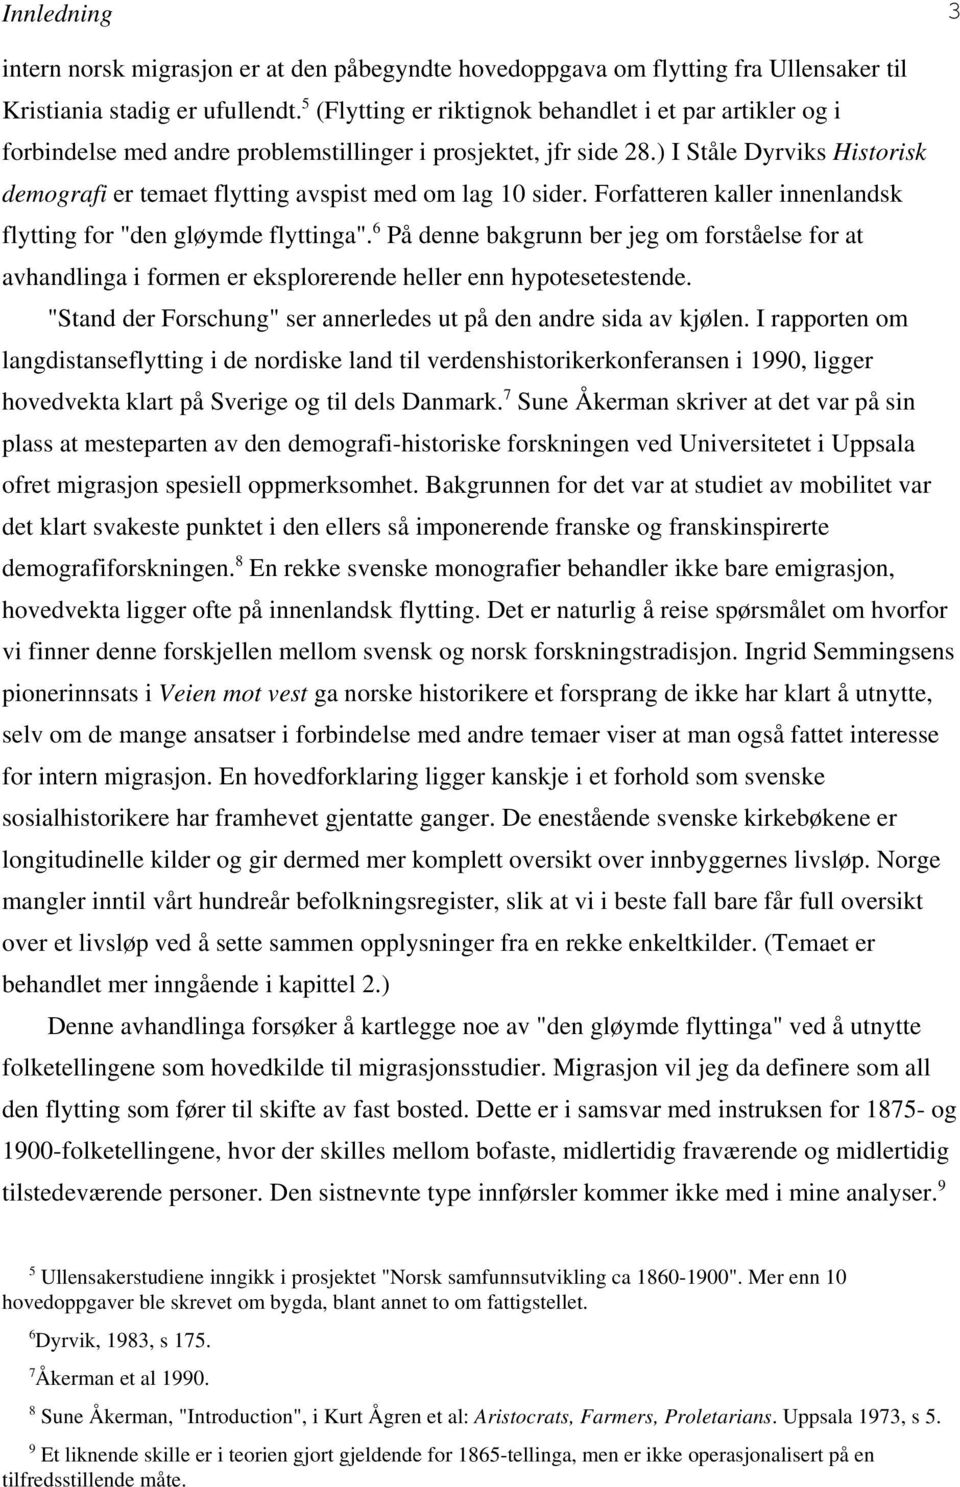 ) I Ståle Dyrviks Historisk demografi er temaet flytting avspist med om lag 10 sider. Forfatteren kaller innenlandsk flytting for "den gløymde flyttinga".